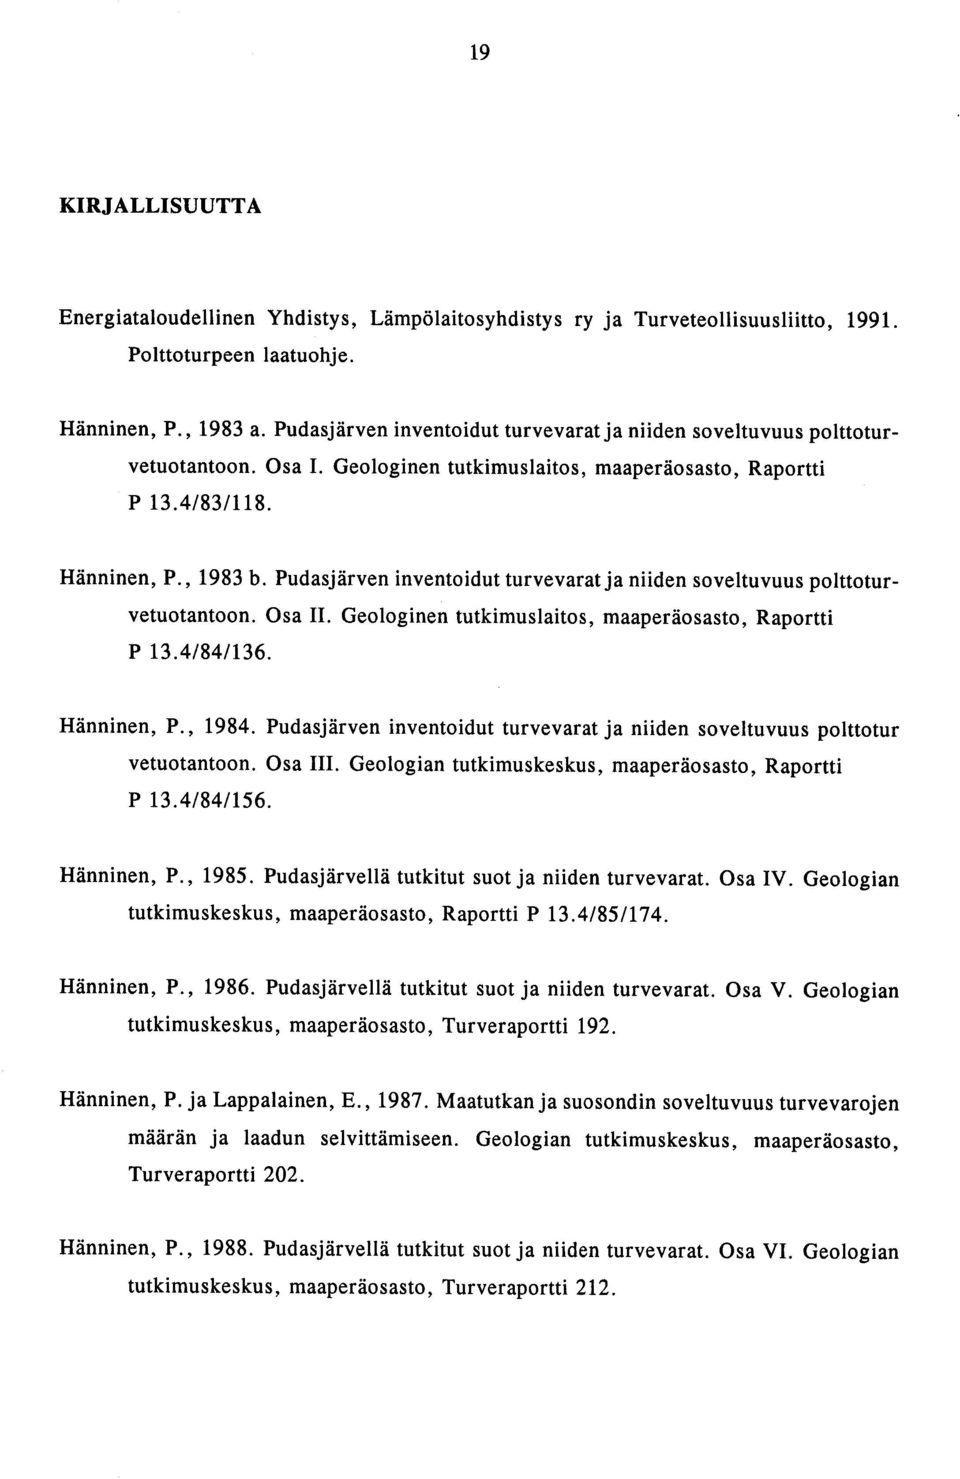 Pudasjärven inventoidut turvevarat ja niiden soveltuvuus polttoturvetuotantoon. Osa II. Geologinen tutkimuslaitos, maaperäosasto, Raportti 13.4/84/136. Hänninen, P., 1984.